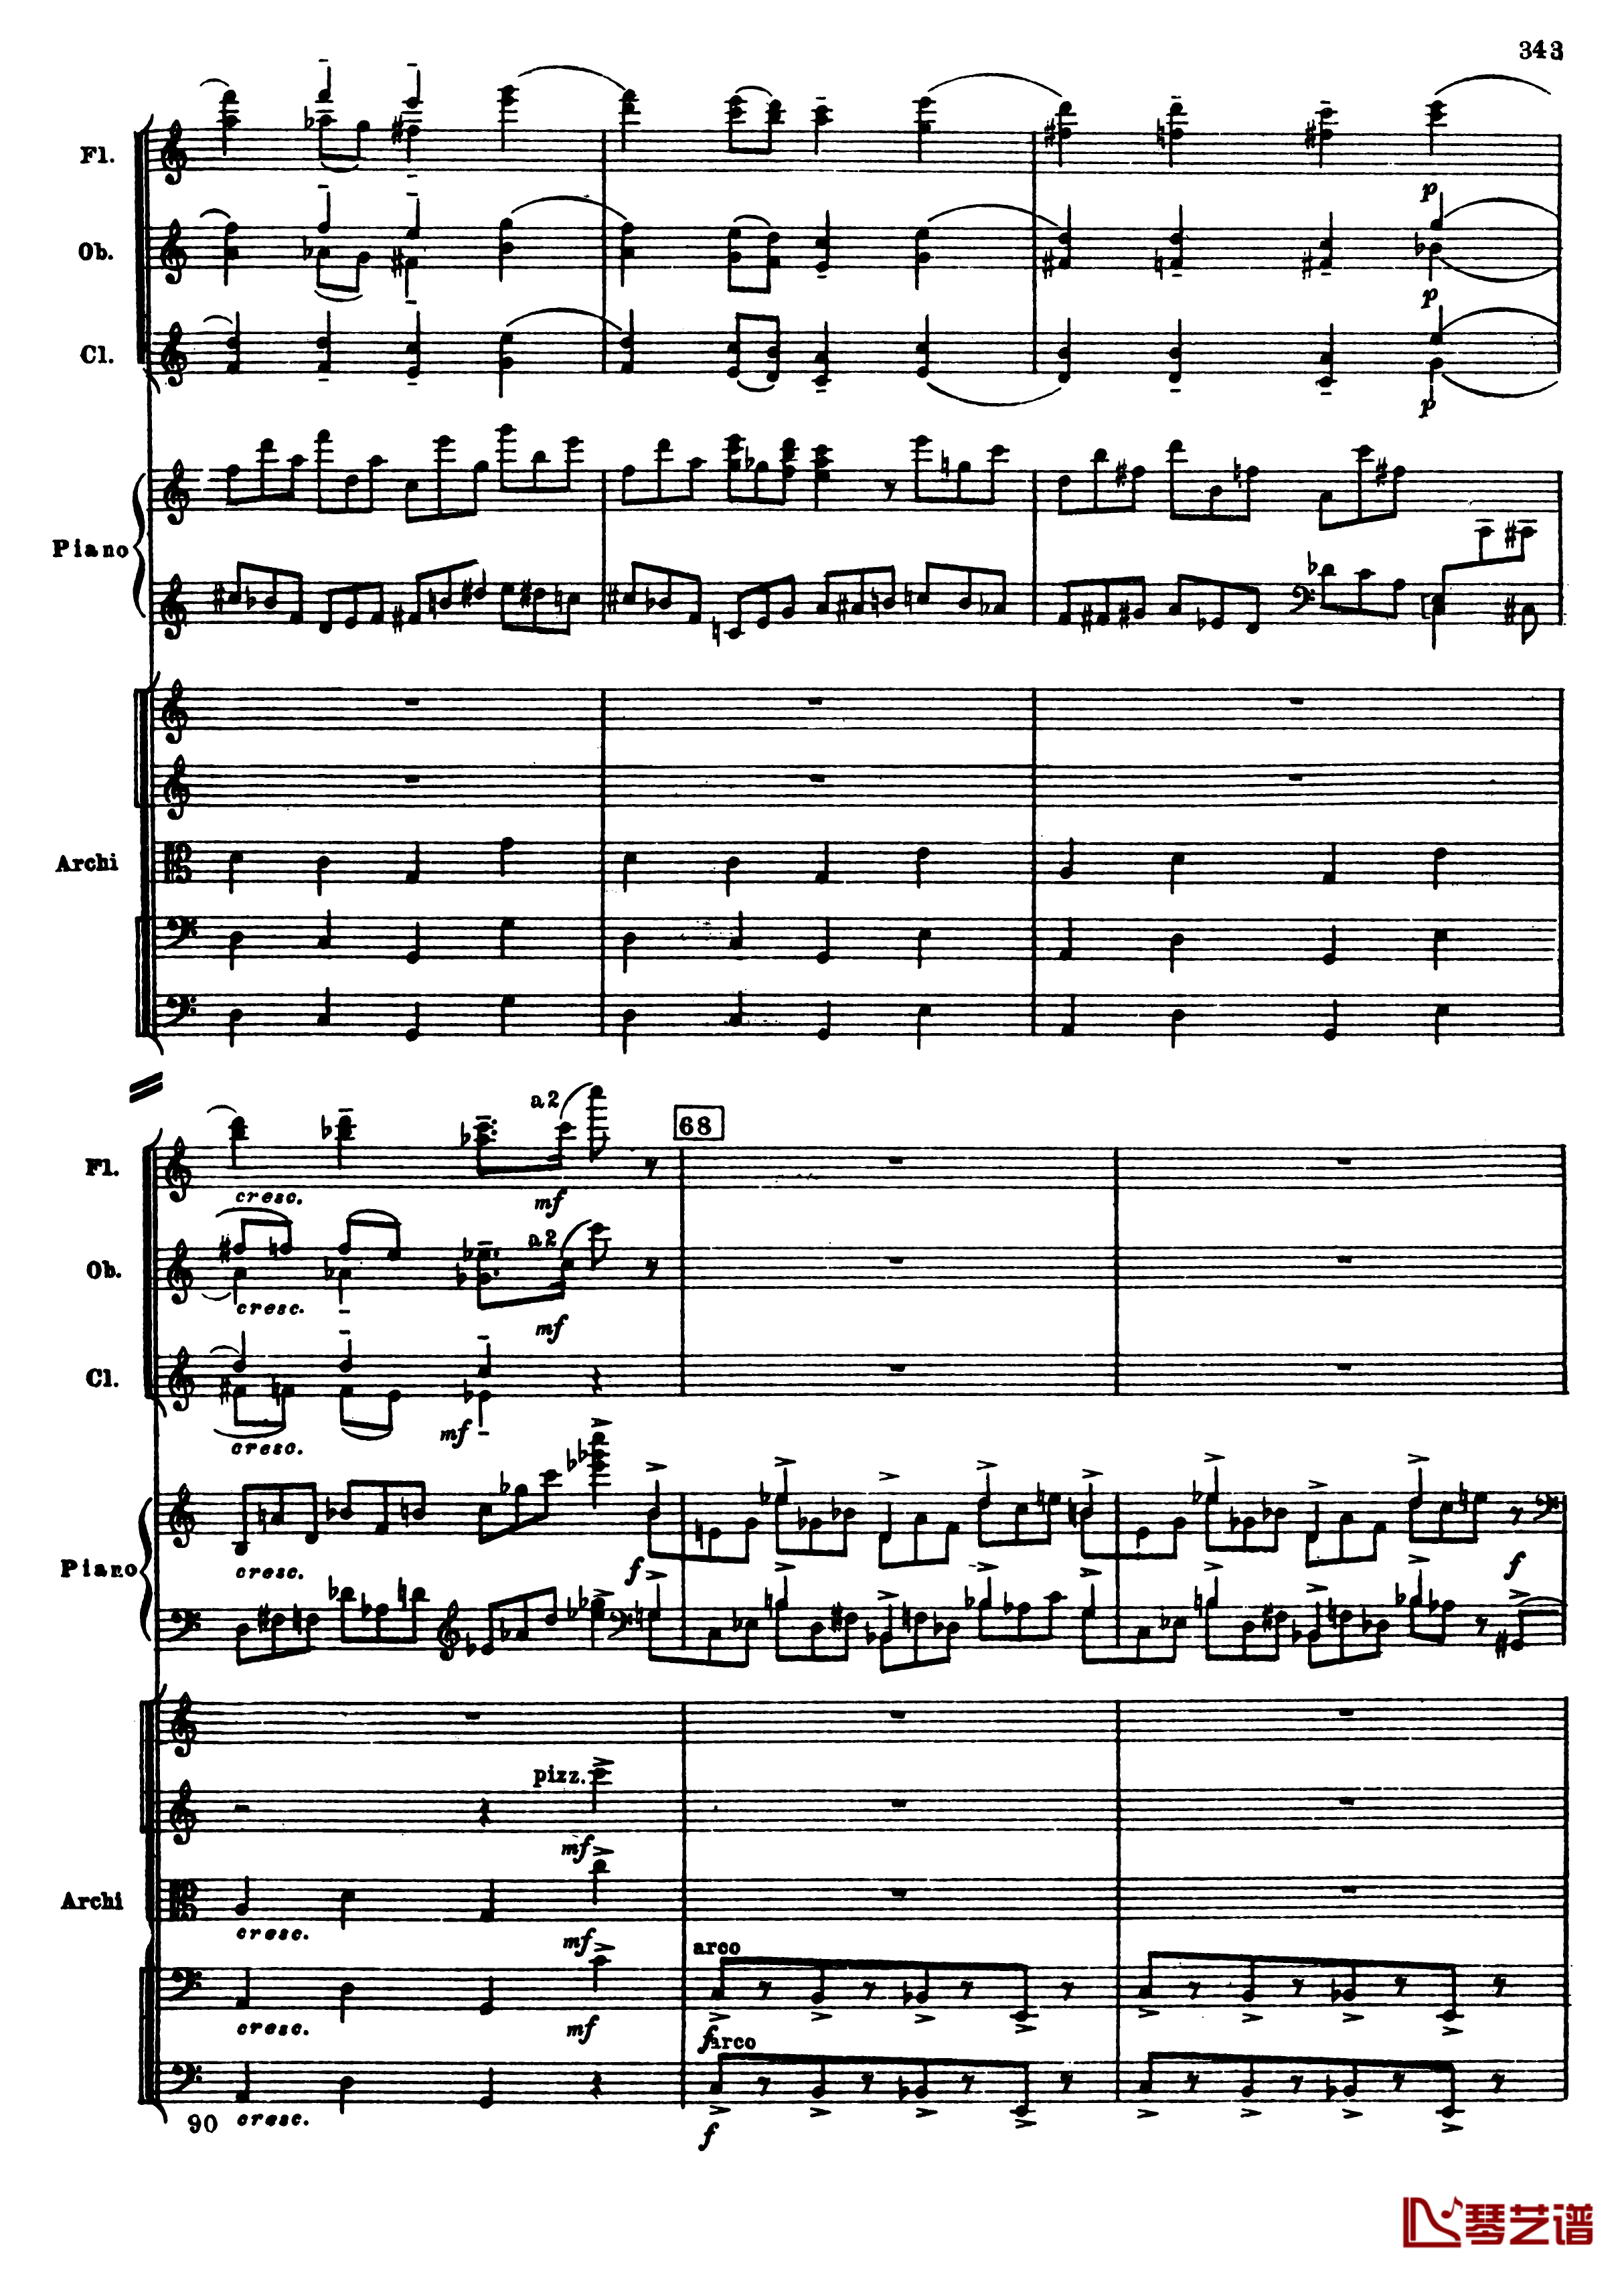 普罗科菲耶夫第三钢琴协奏曲钢琴谱-总谱-普罗科非耶夫75